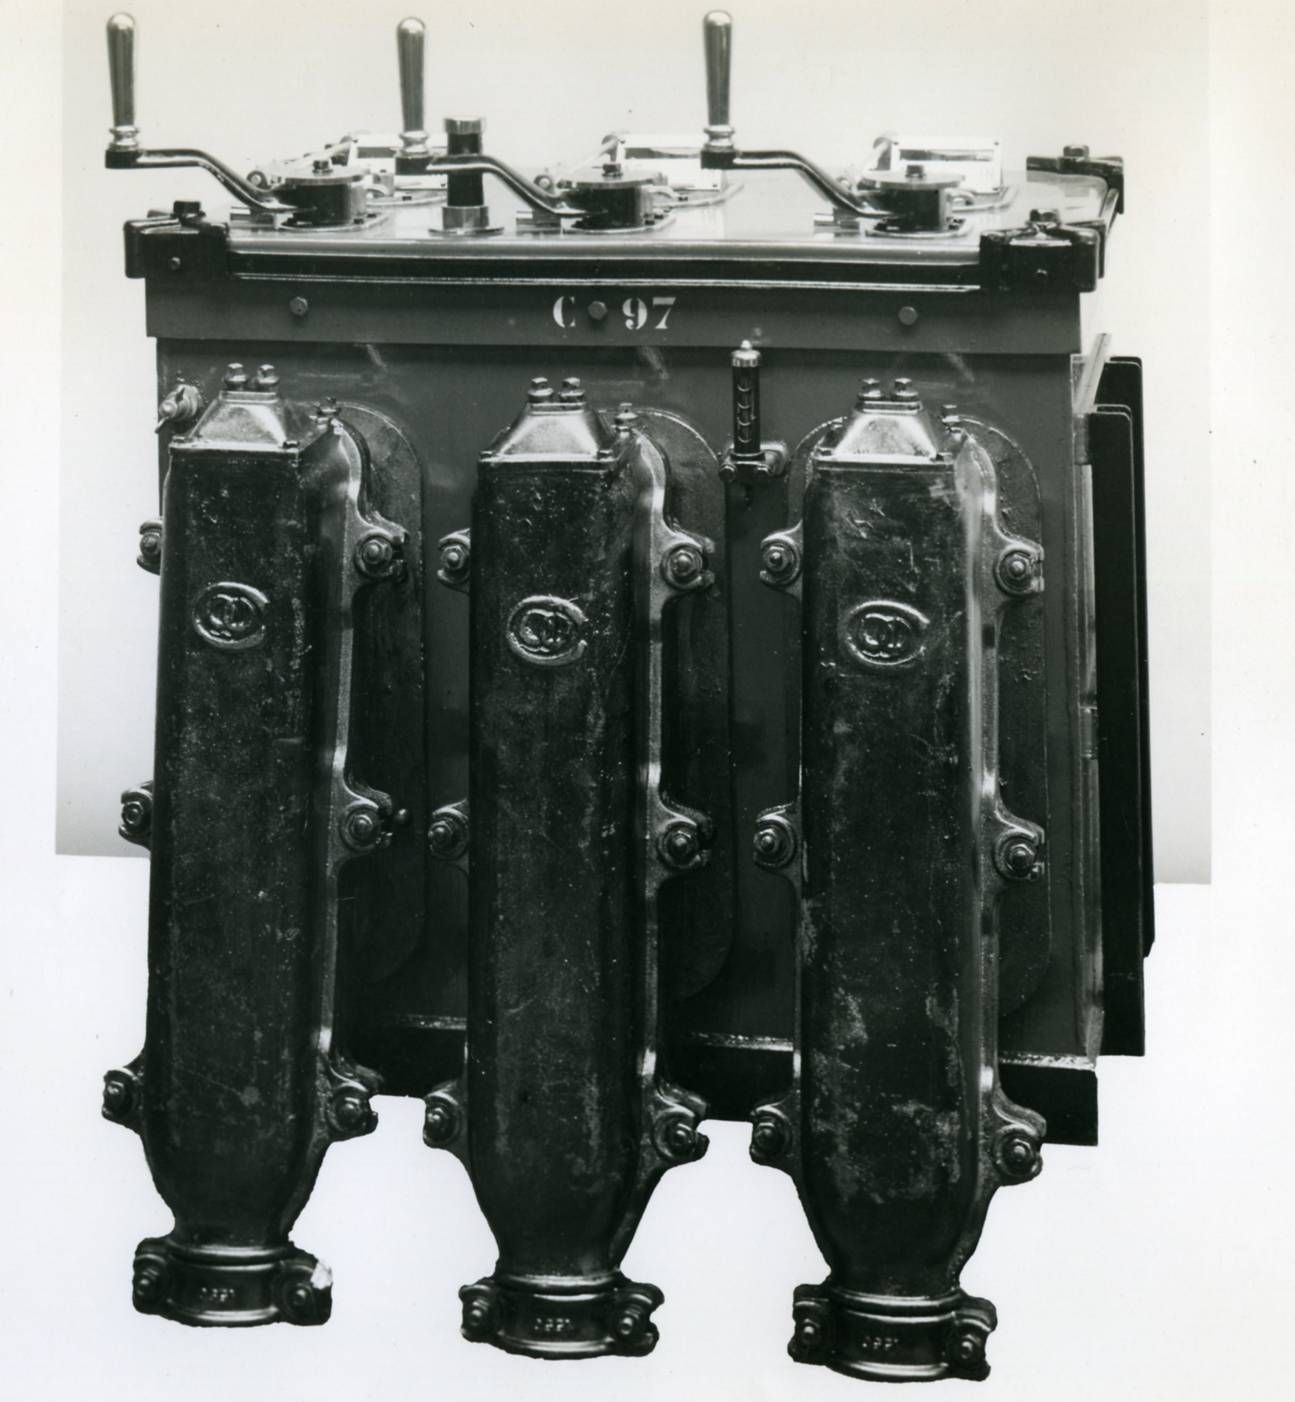 Olieschakelaar 10 kV 1922